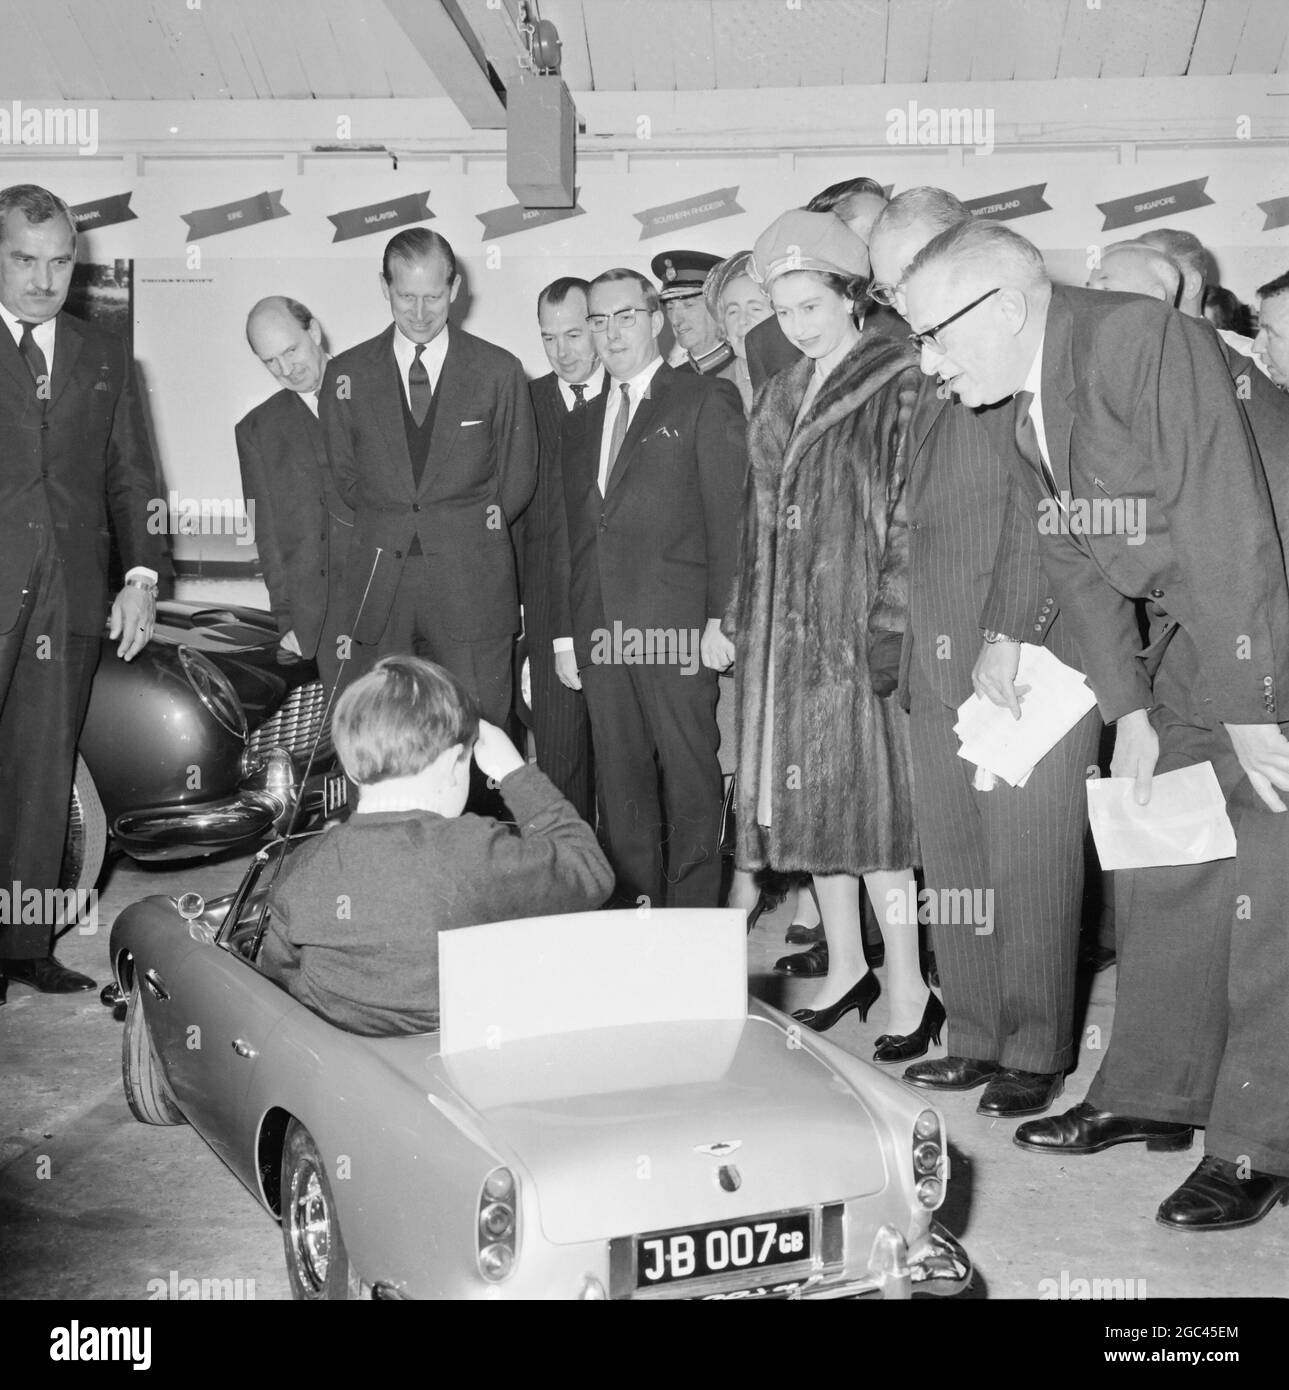 Ein Geschenk für Prinz Andrew: Newport, Pragnell , Buckinghamshire , England: Die britische Königin Elizabeth II. Und ihr Gemahl Prinz Philip, der Herzog von Edinburgh, sehen Ian Heggie, 6 Jahre alt, während ihres heutigen Besuchs in North Buckinghamshire ein maßstabsgegegegegegegemaßtes Modell des berühmten James Bond-Wagens. Die Demonstration fand in der Fabrik von Aston Martin Lagonda statt, die das Modell Prinz Andrew, dem 6 Jahre alten dritten Kind der Königin, vorstellt. Das Modell ist komplett mit elektronischen Maschinengewehren, die nur emittieren, ein realistisches Geräusch und sind in den Begrenzungslichter verborgen, und eine Rauchscheibe Stockfoto